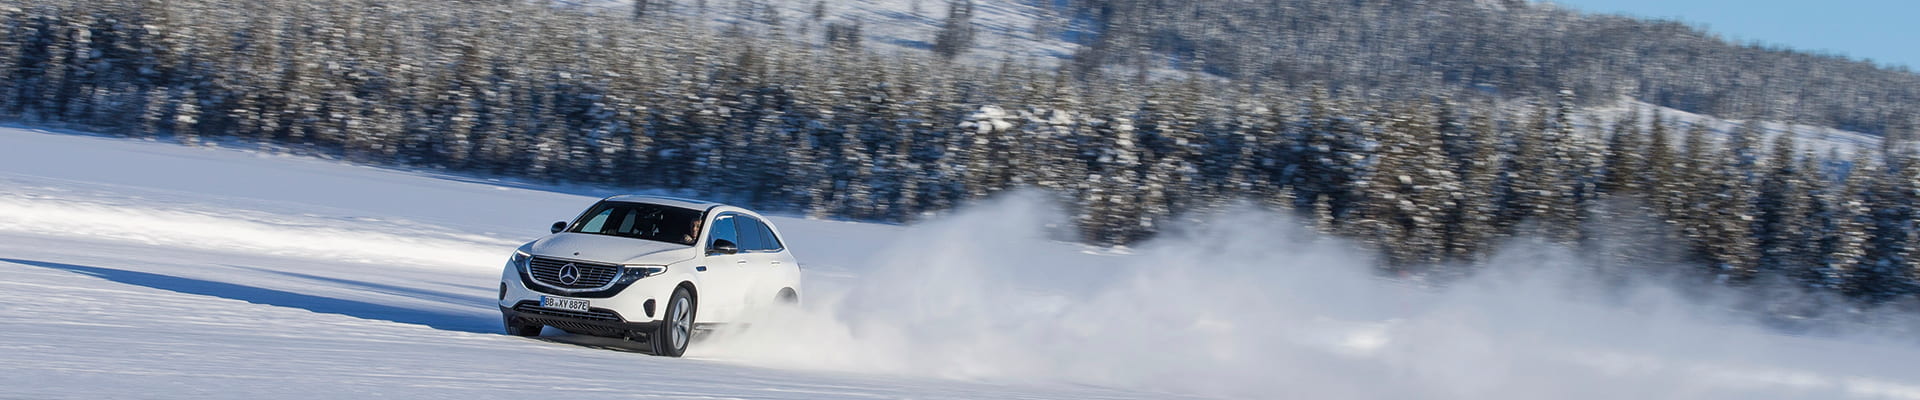 Reichweite erhöhen Elektrofahrzeug Reichweite im Winter